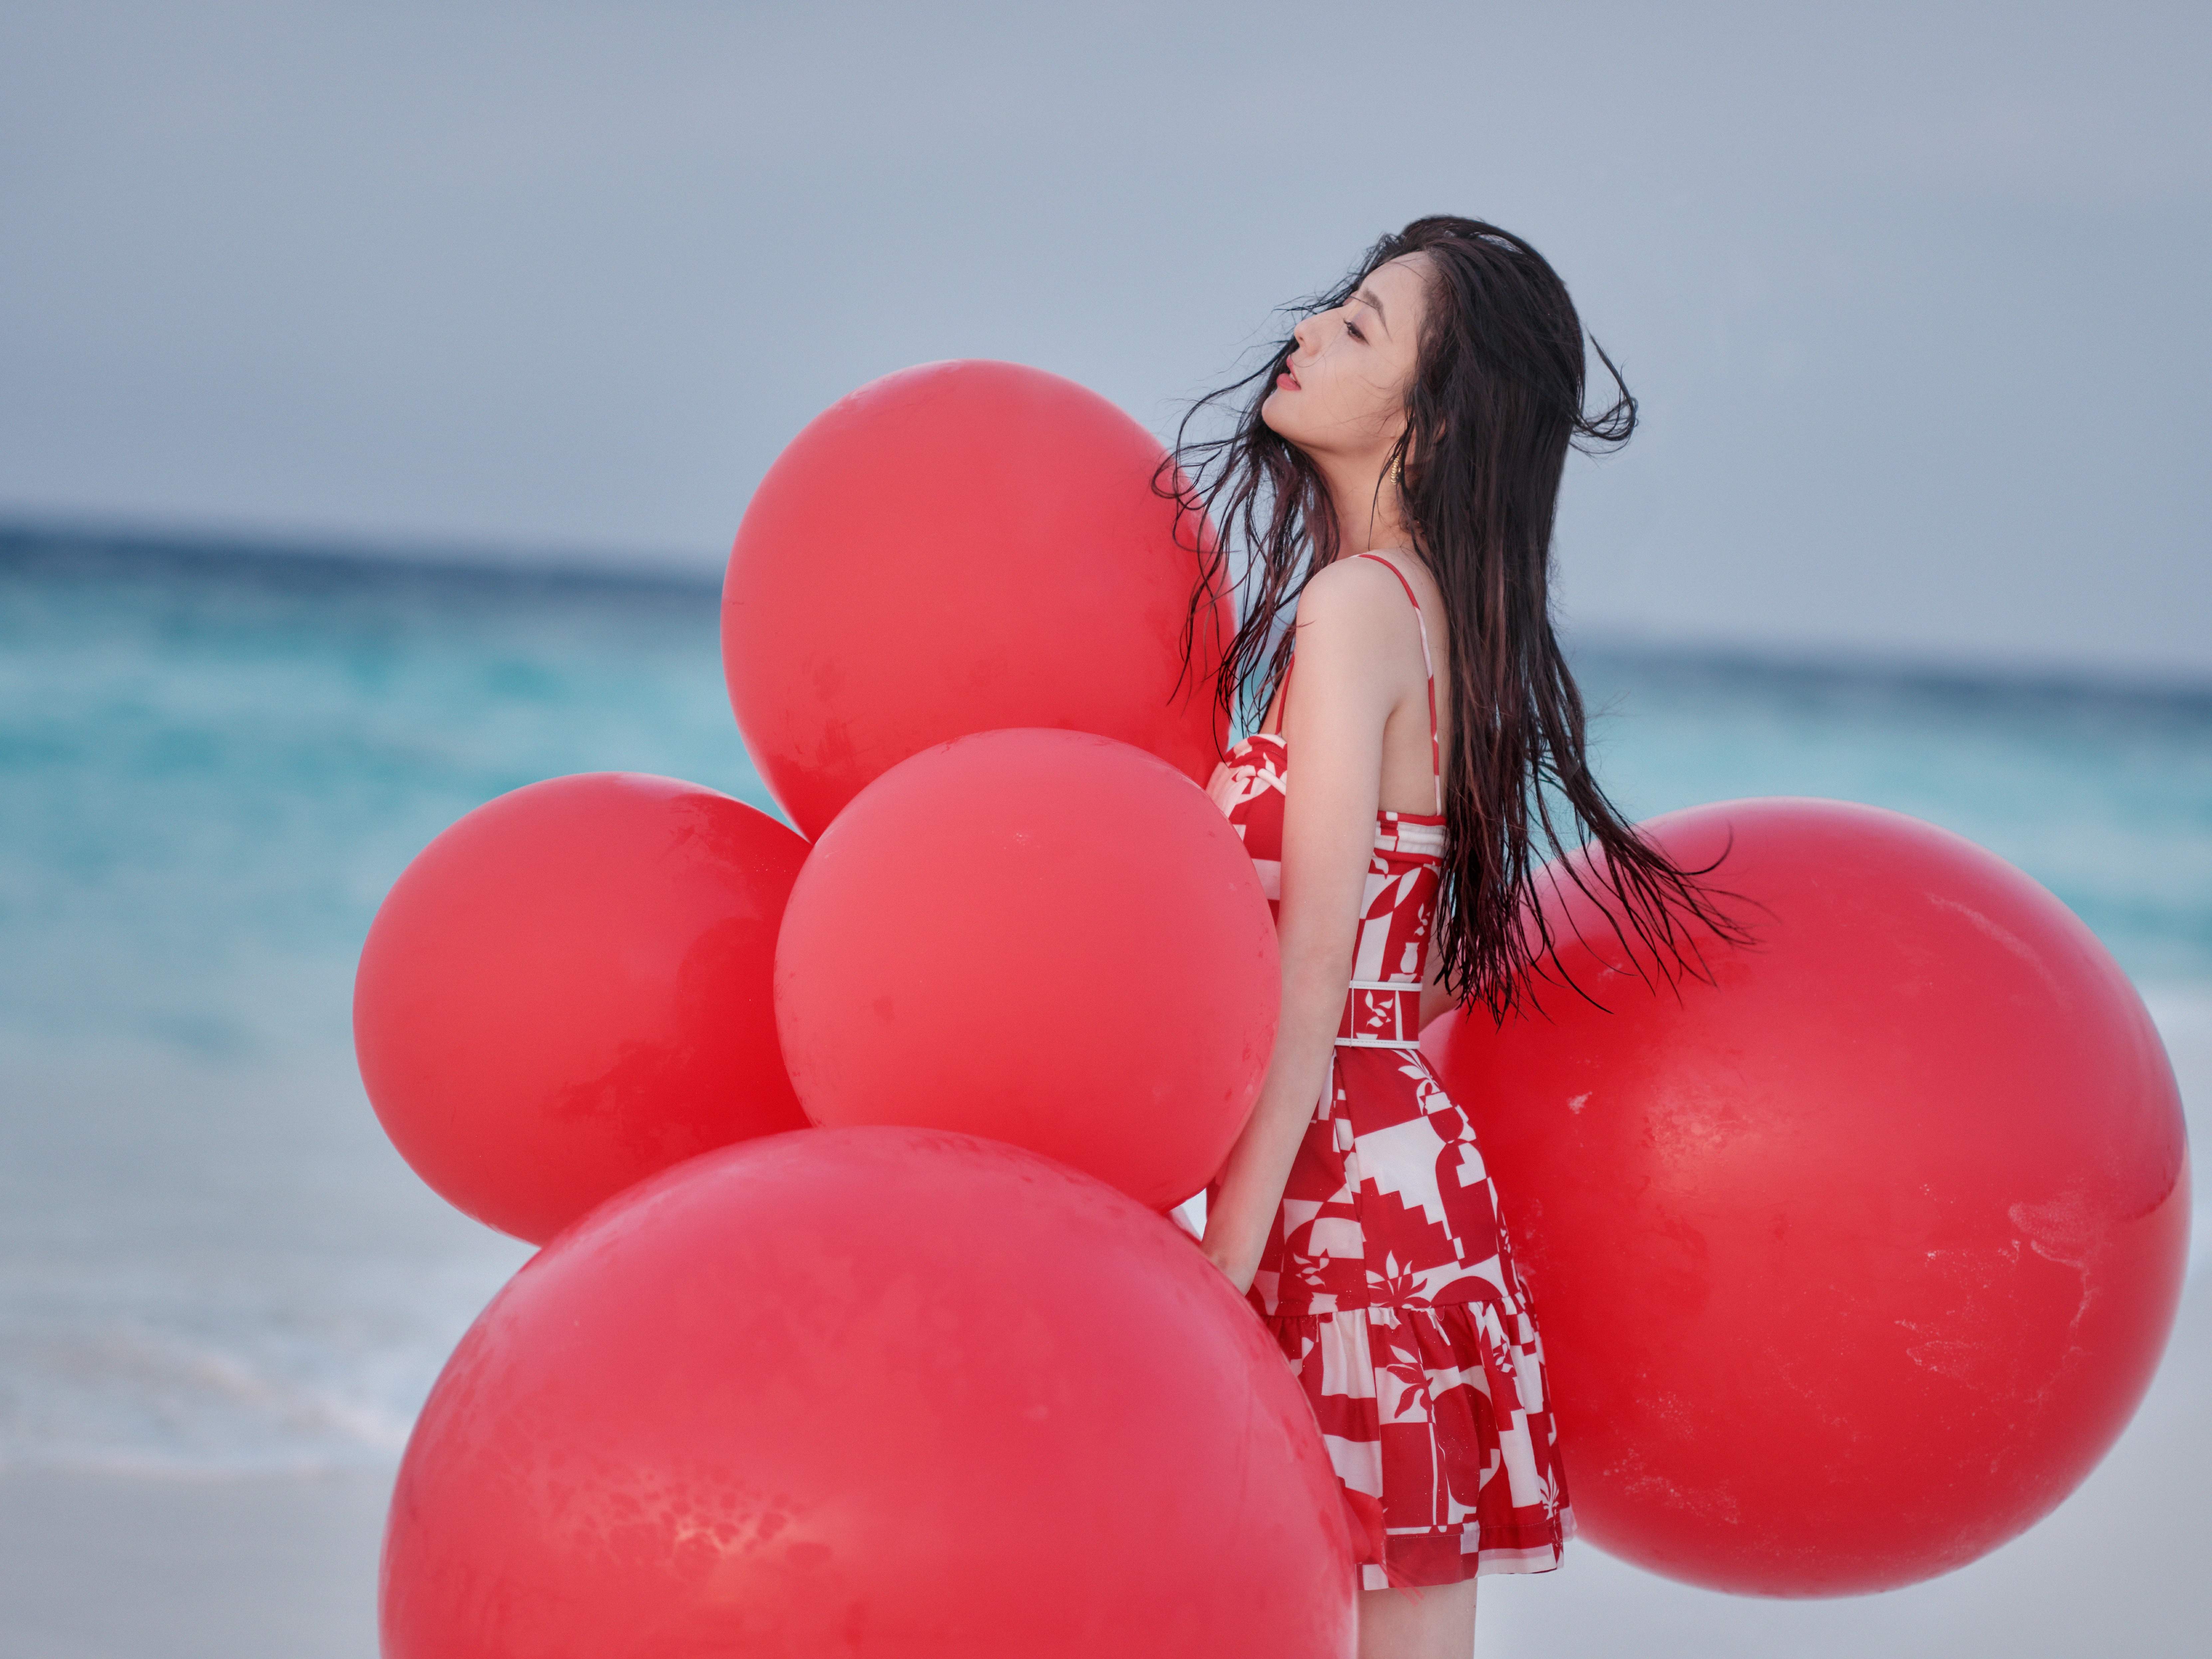 佟丽娅新春海边写真 红色吊带连衣裙笑容甜美,1 (7)